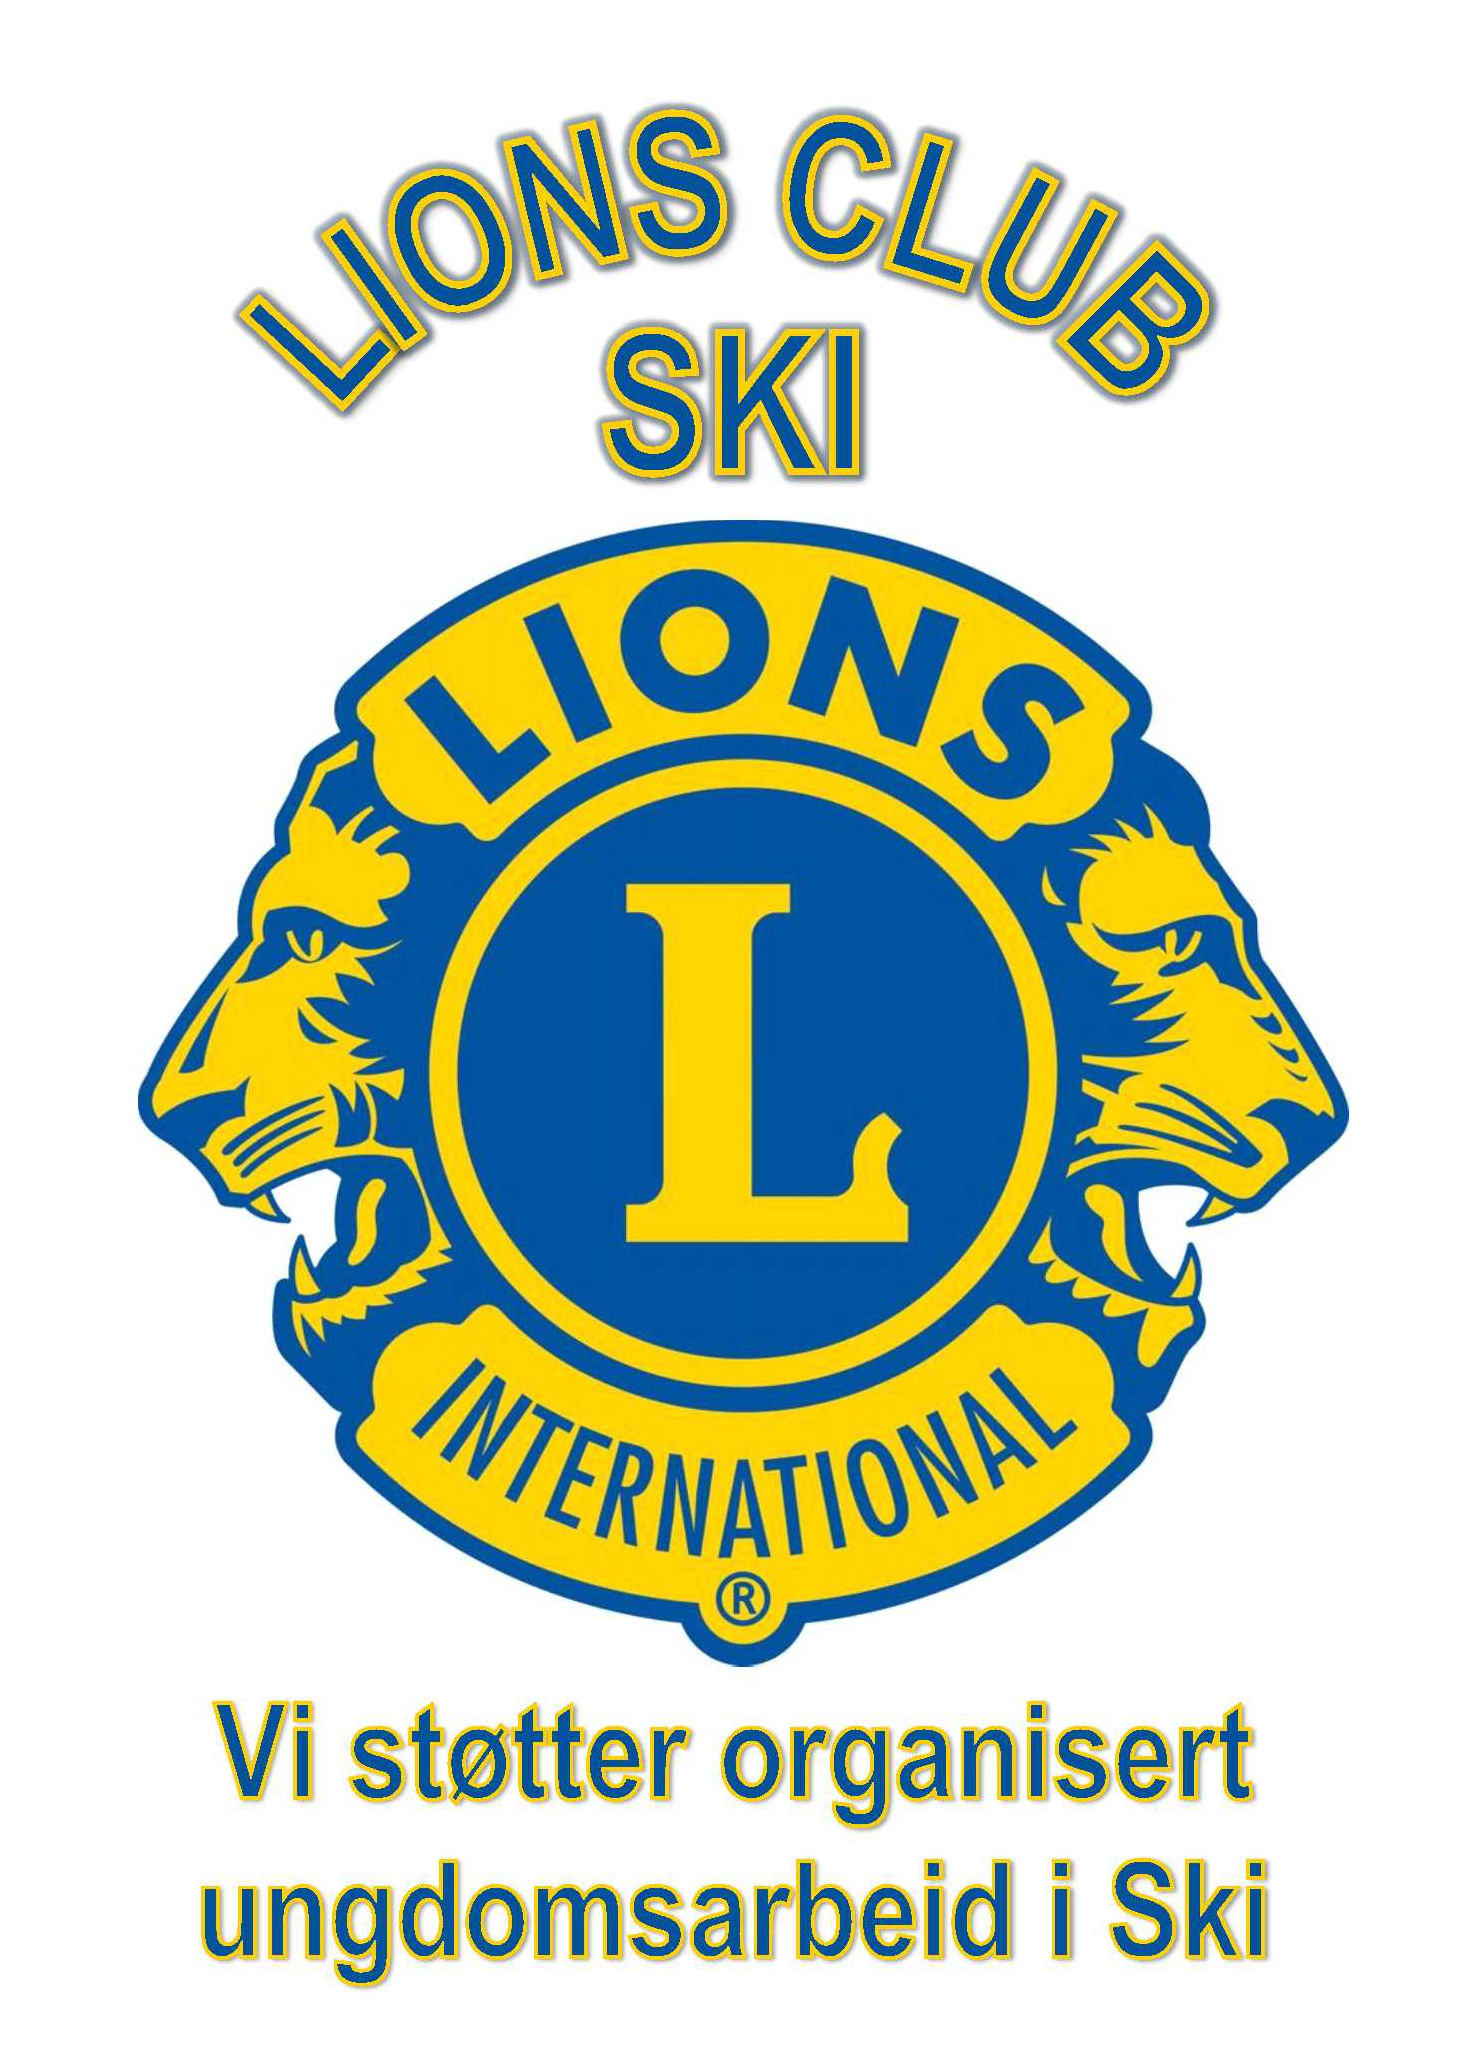 Lions Club Ski